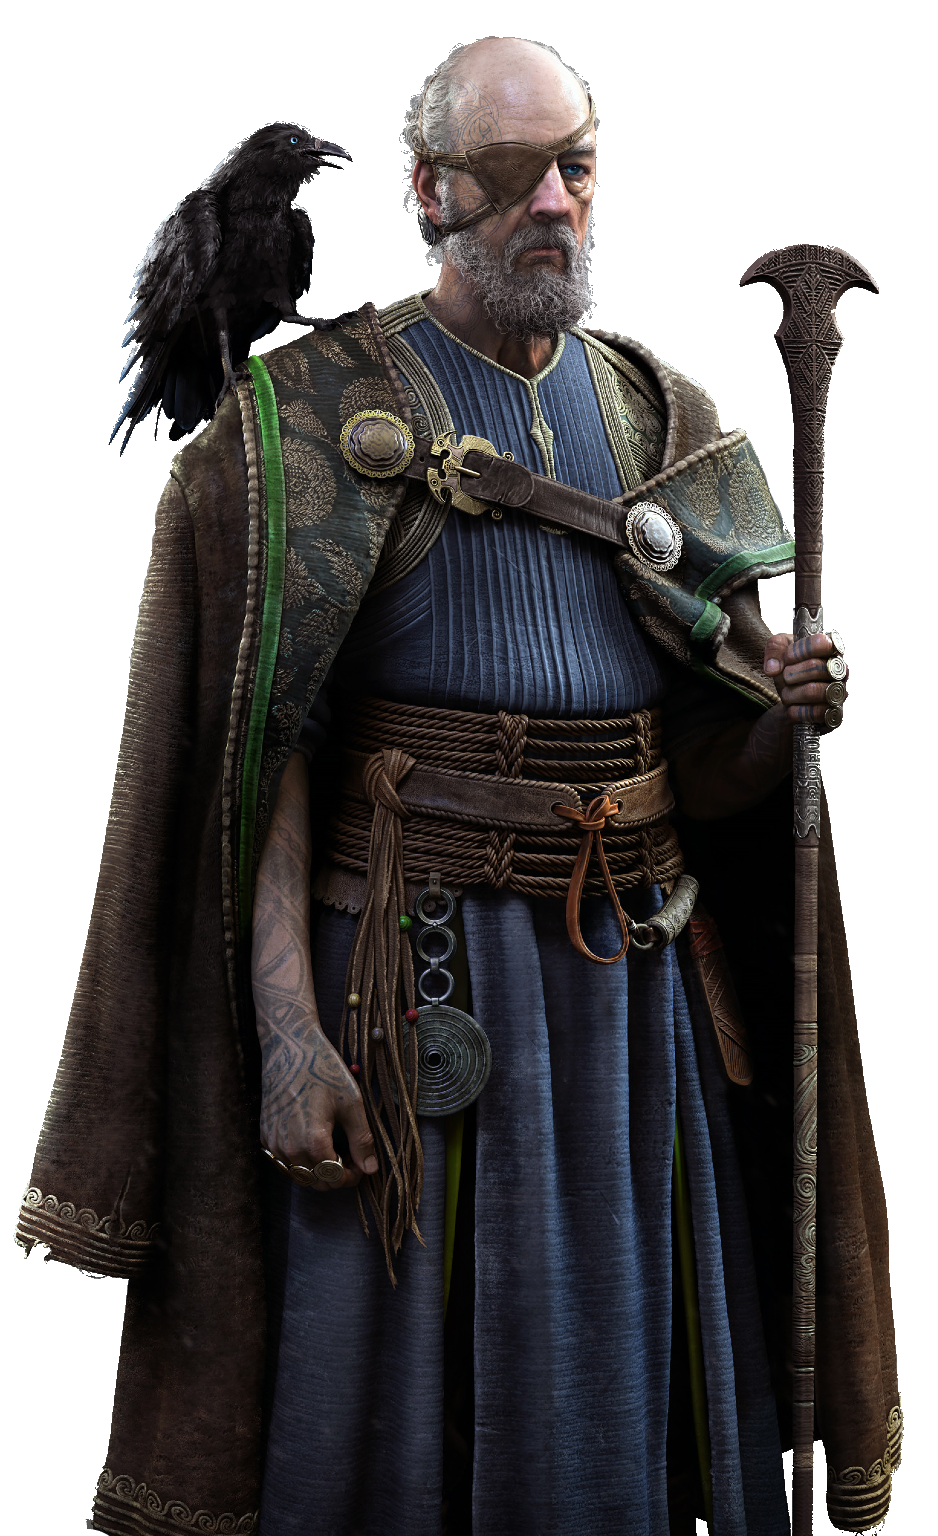 God of War Ragnarok: personagens e deuses